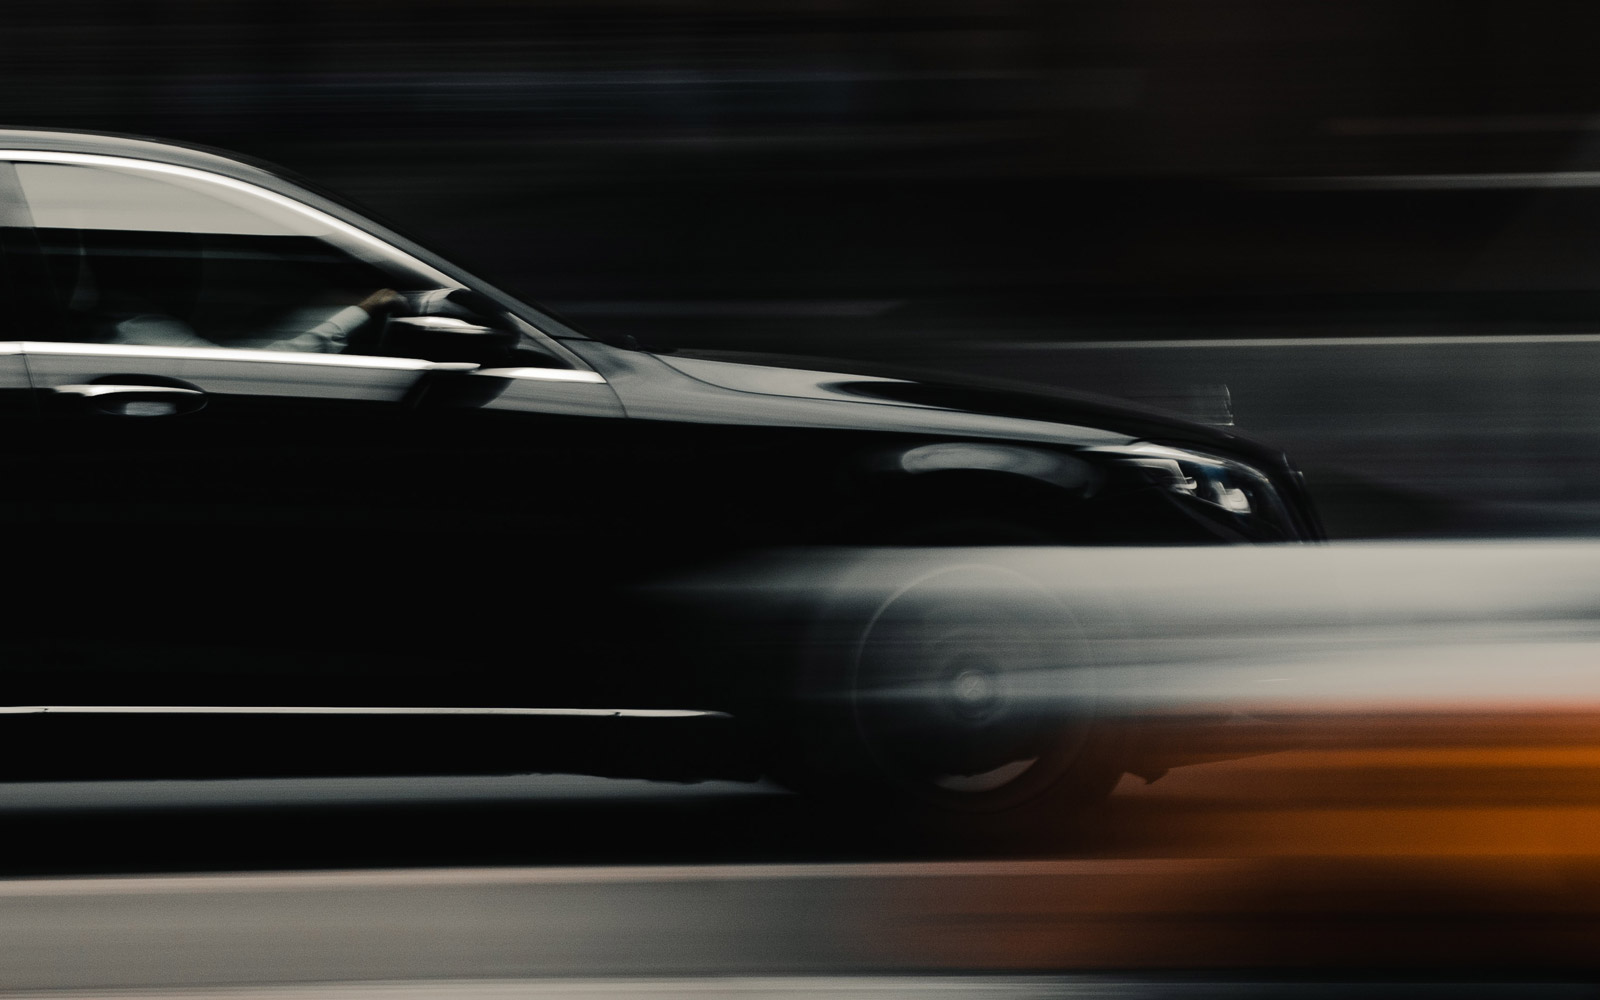 Mercedes blur in traffic